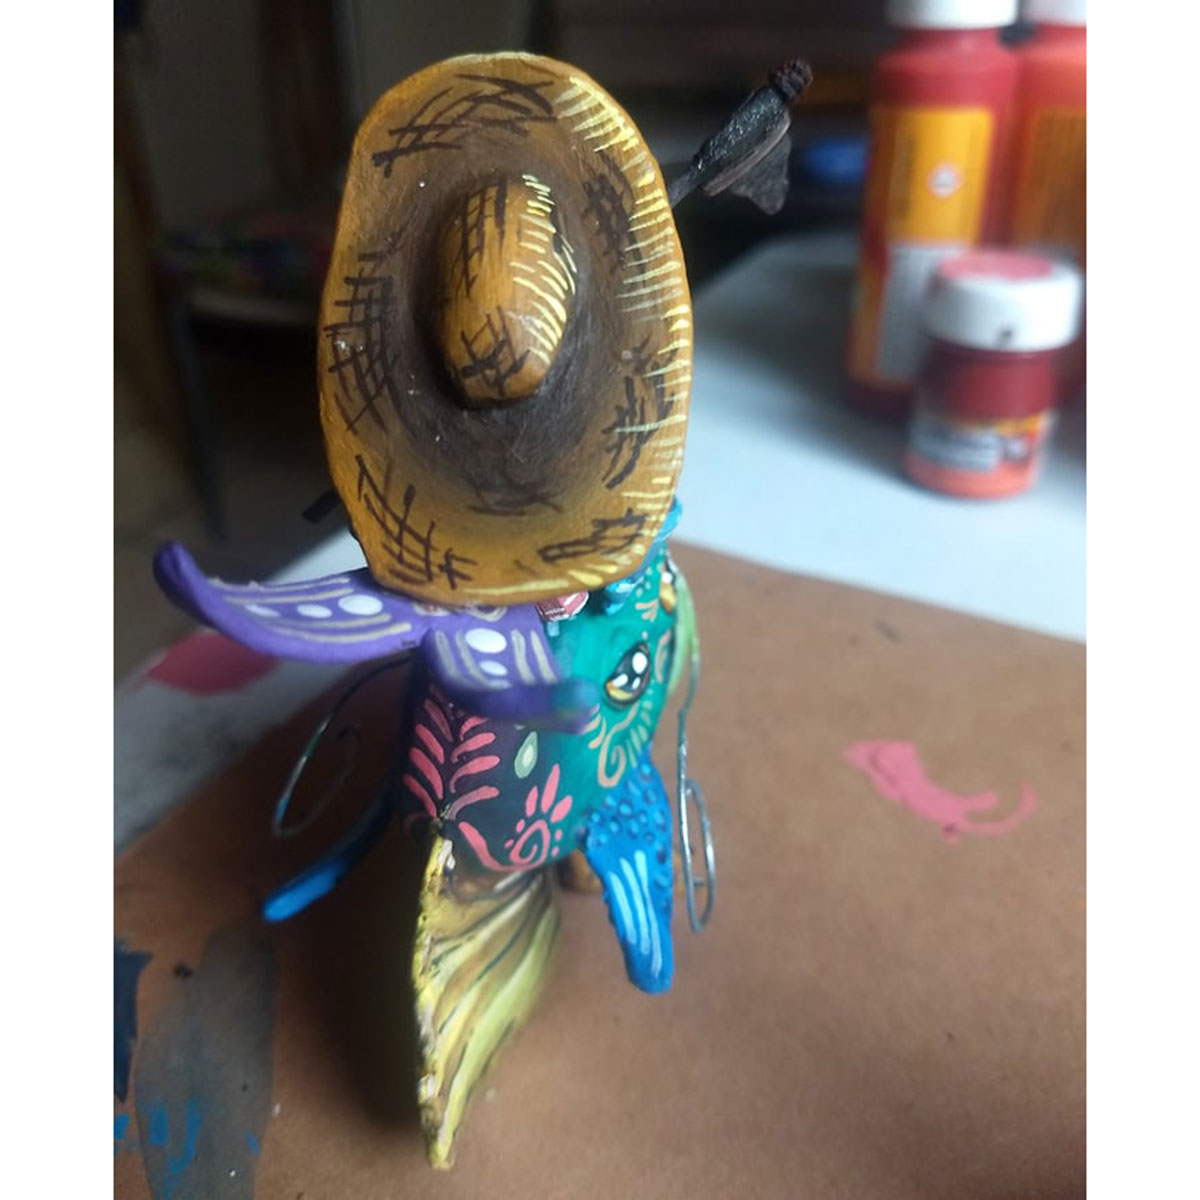 Cartoneria (Mexican Paper Mache) Isaias Alejandro Morales Delgado: Miniature Fish Rider Alebrijes